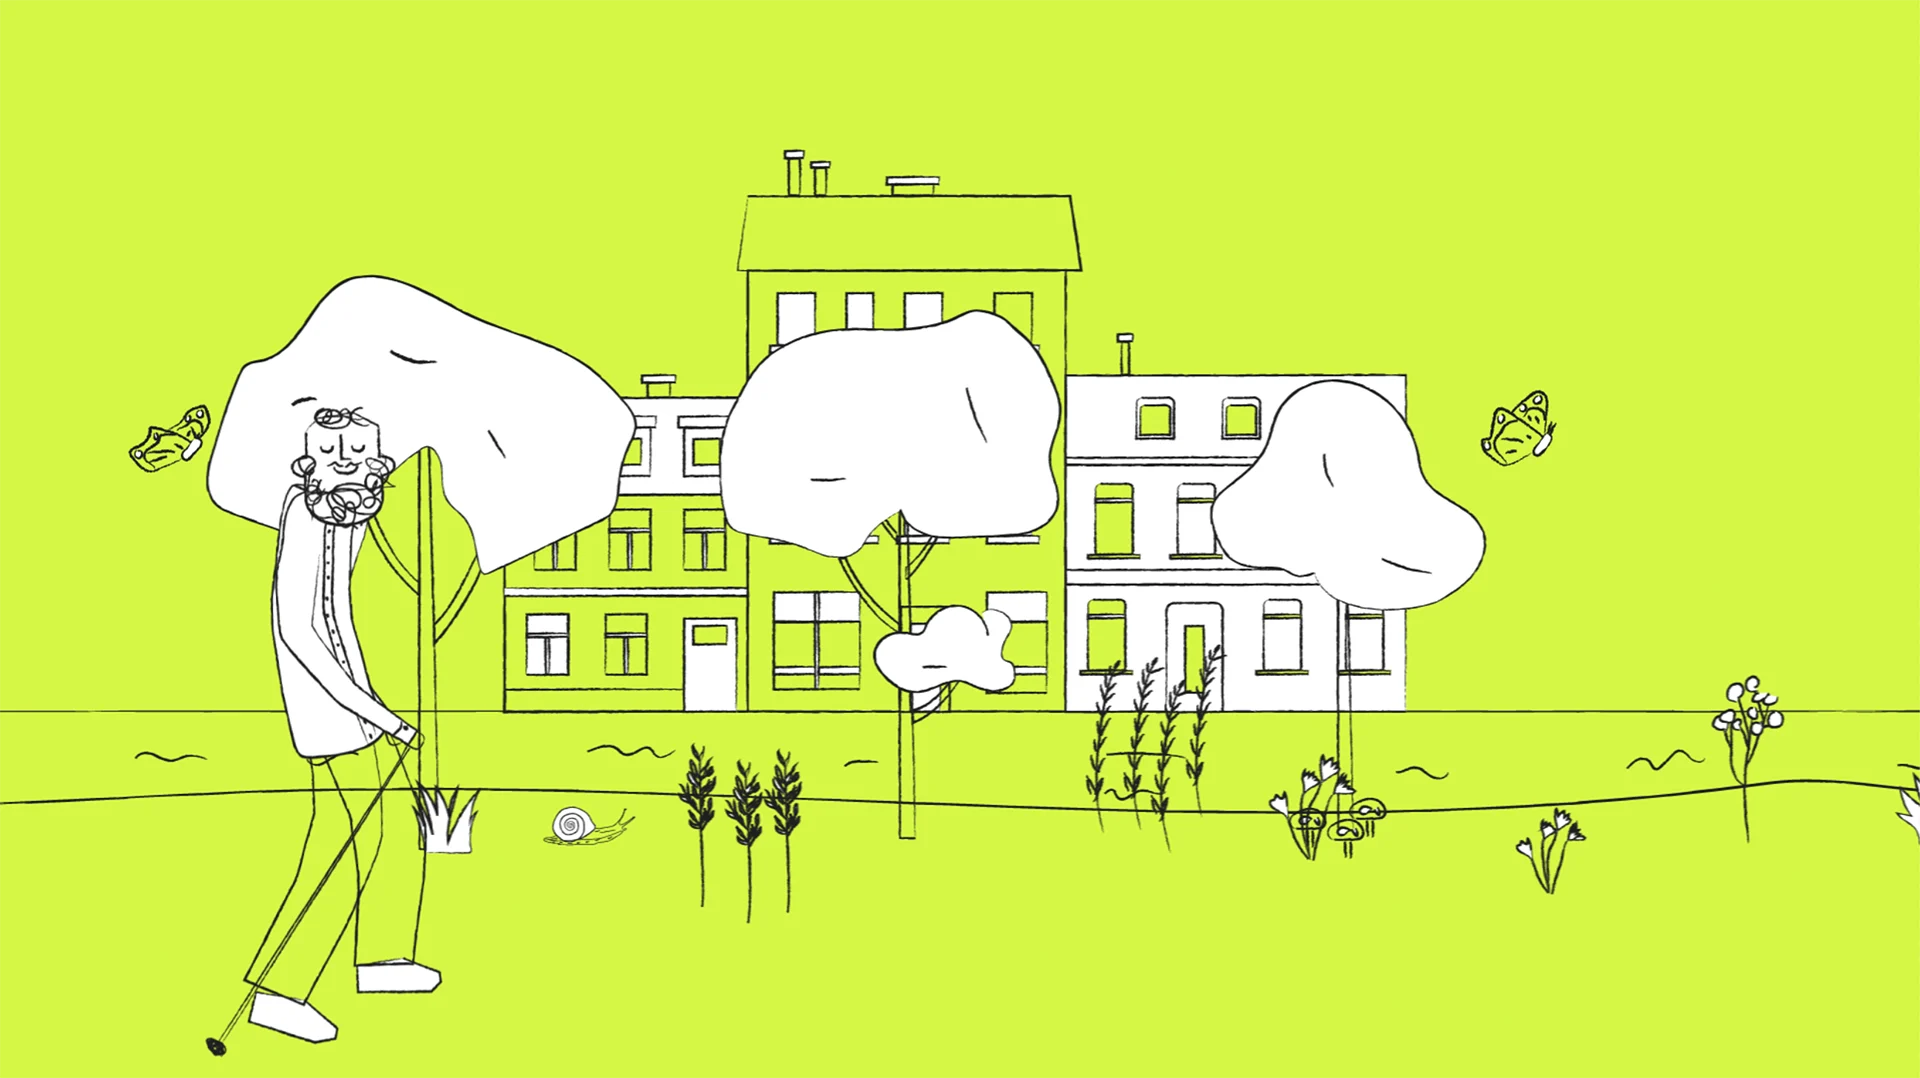 Cornland Studio - Dessin d'une ville en 2D sur fond vert